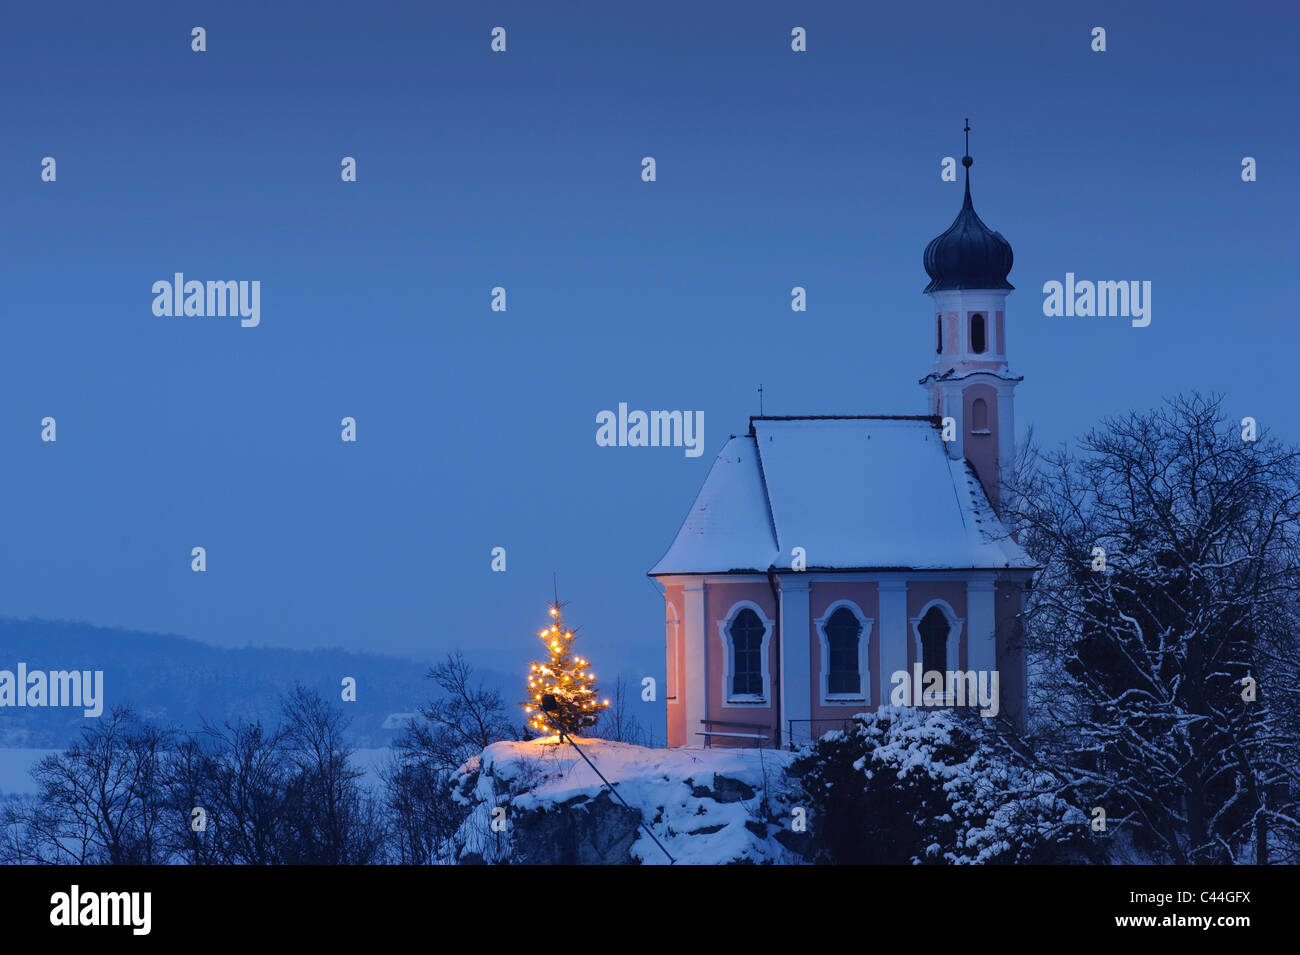 Cappella di natale in inverno con neve di notte e albero illuminato, fotografia scattata in Baviera, Germania Foto Stock